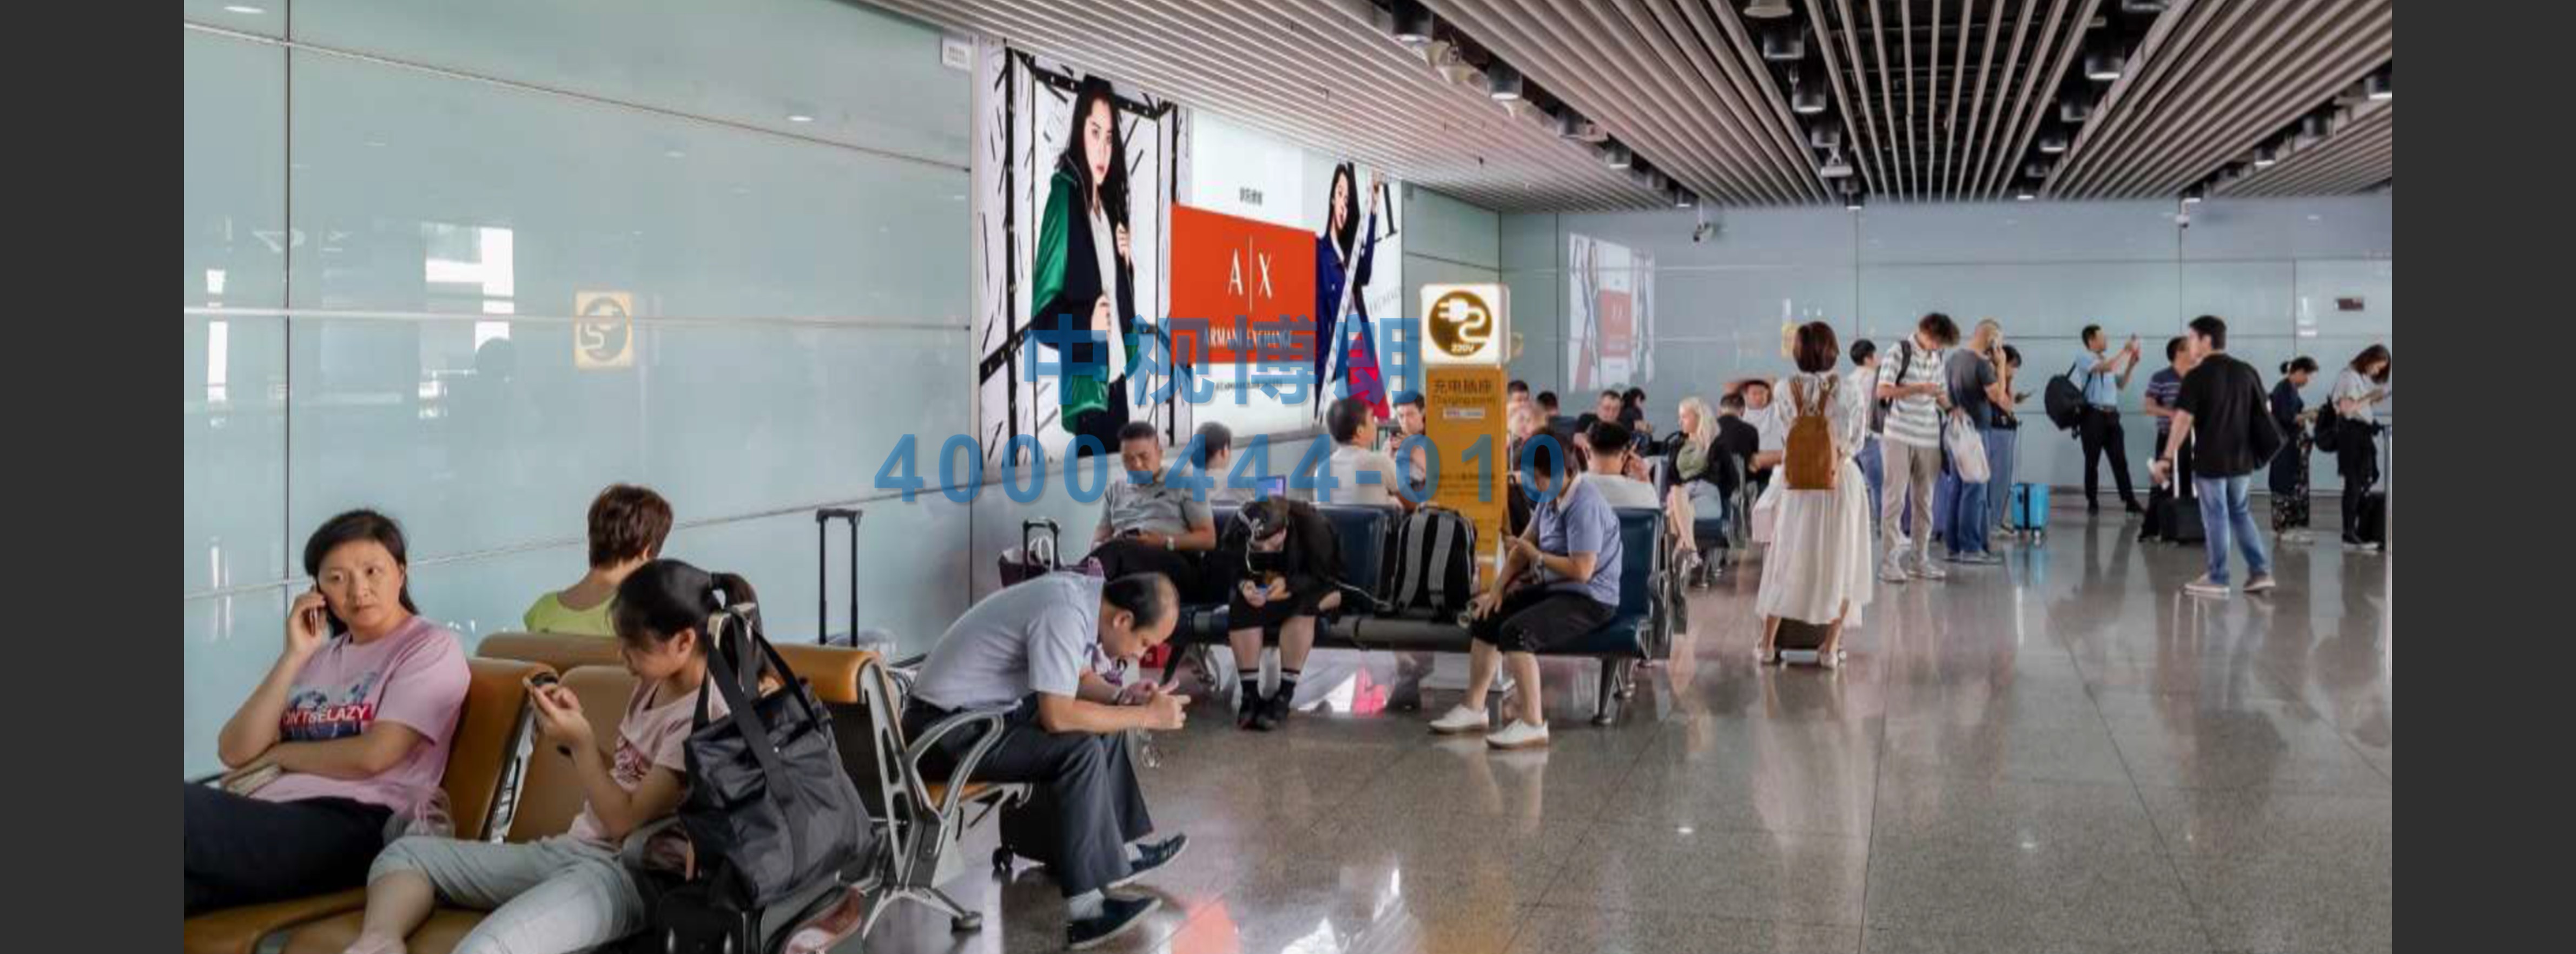 北京首都机场广告-T3C Departure Cross Area 6 Wall Light Boxes